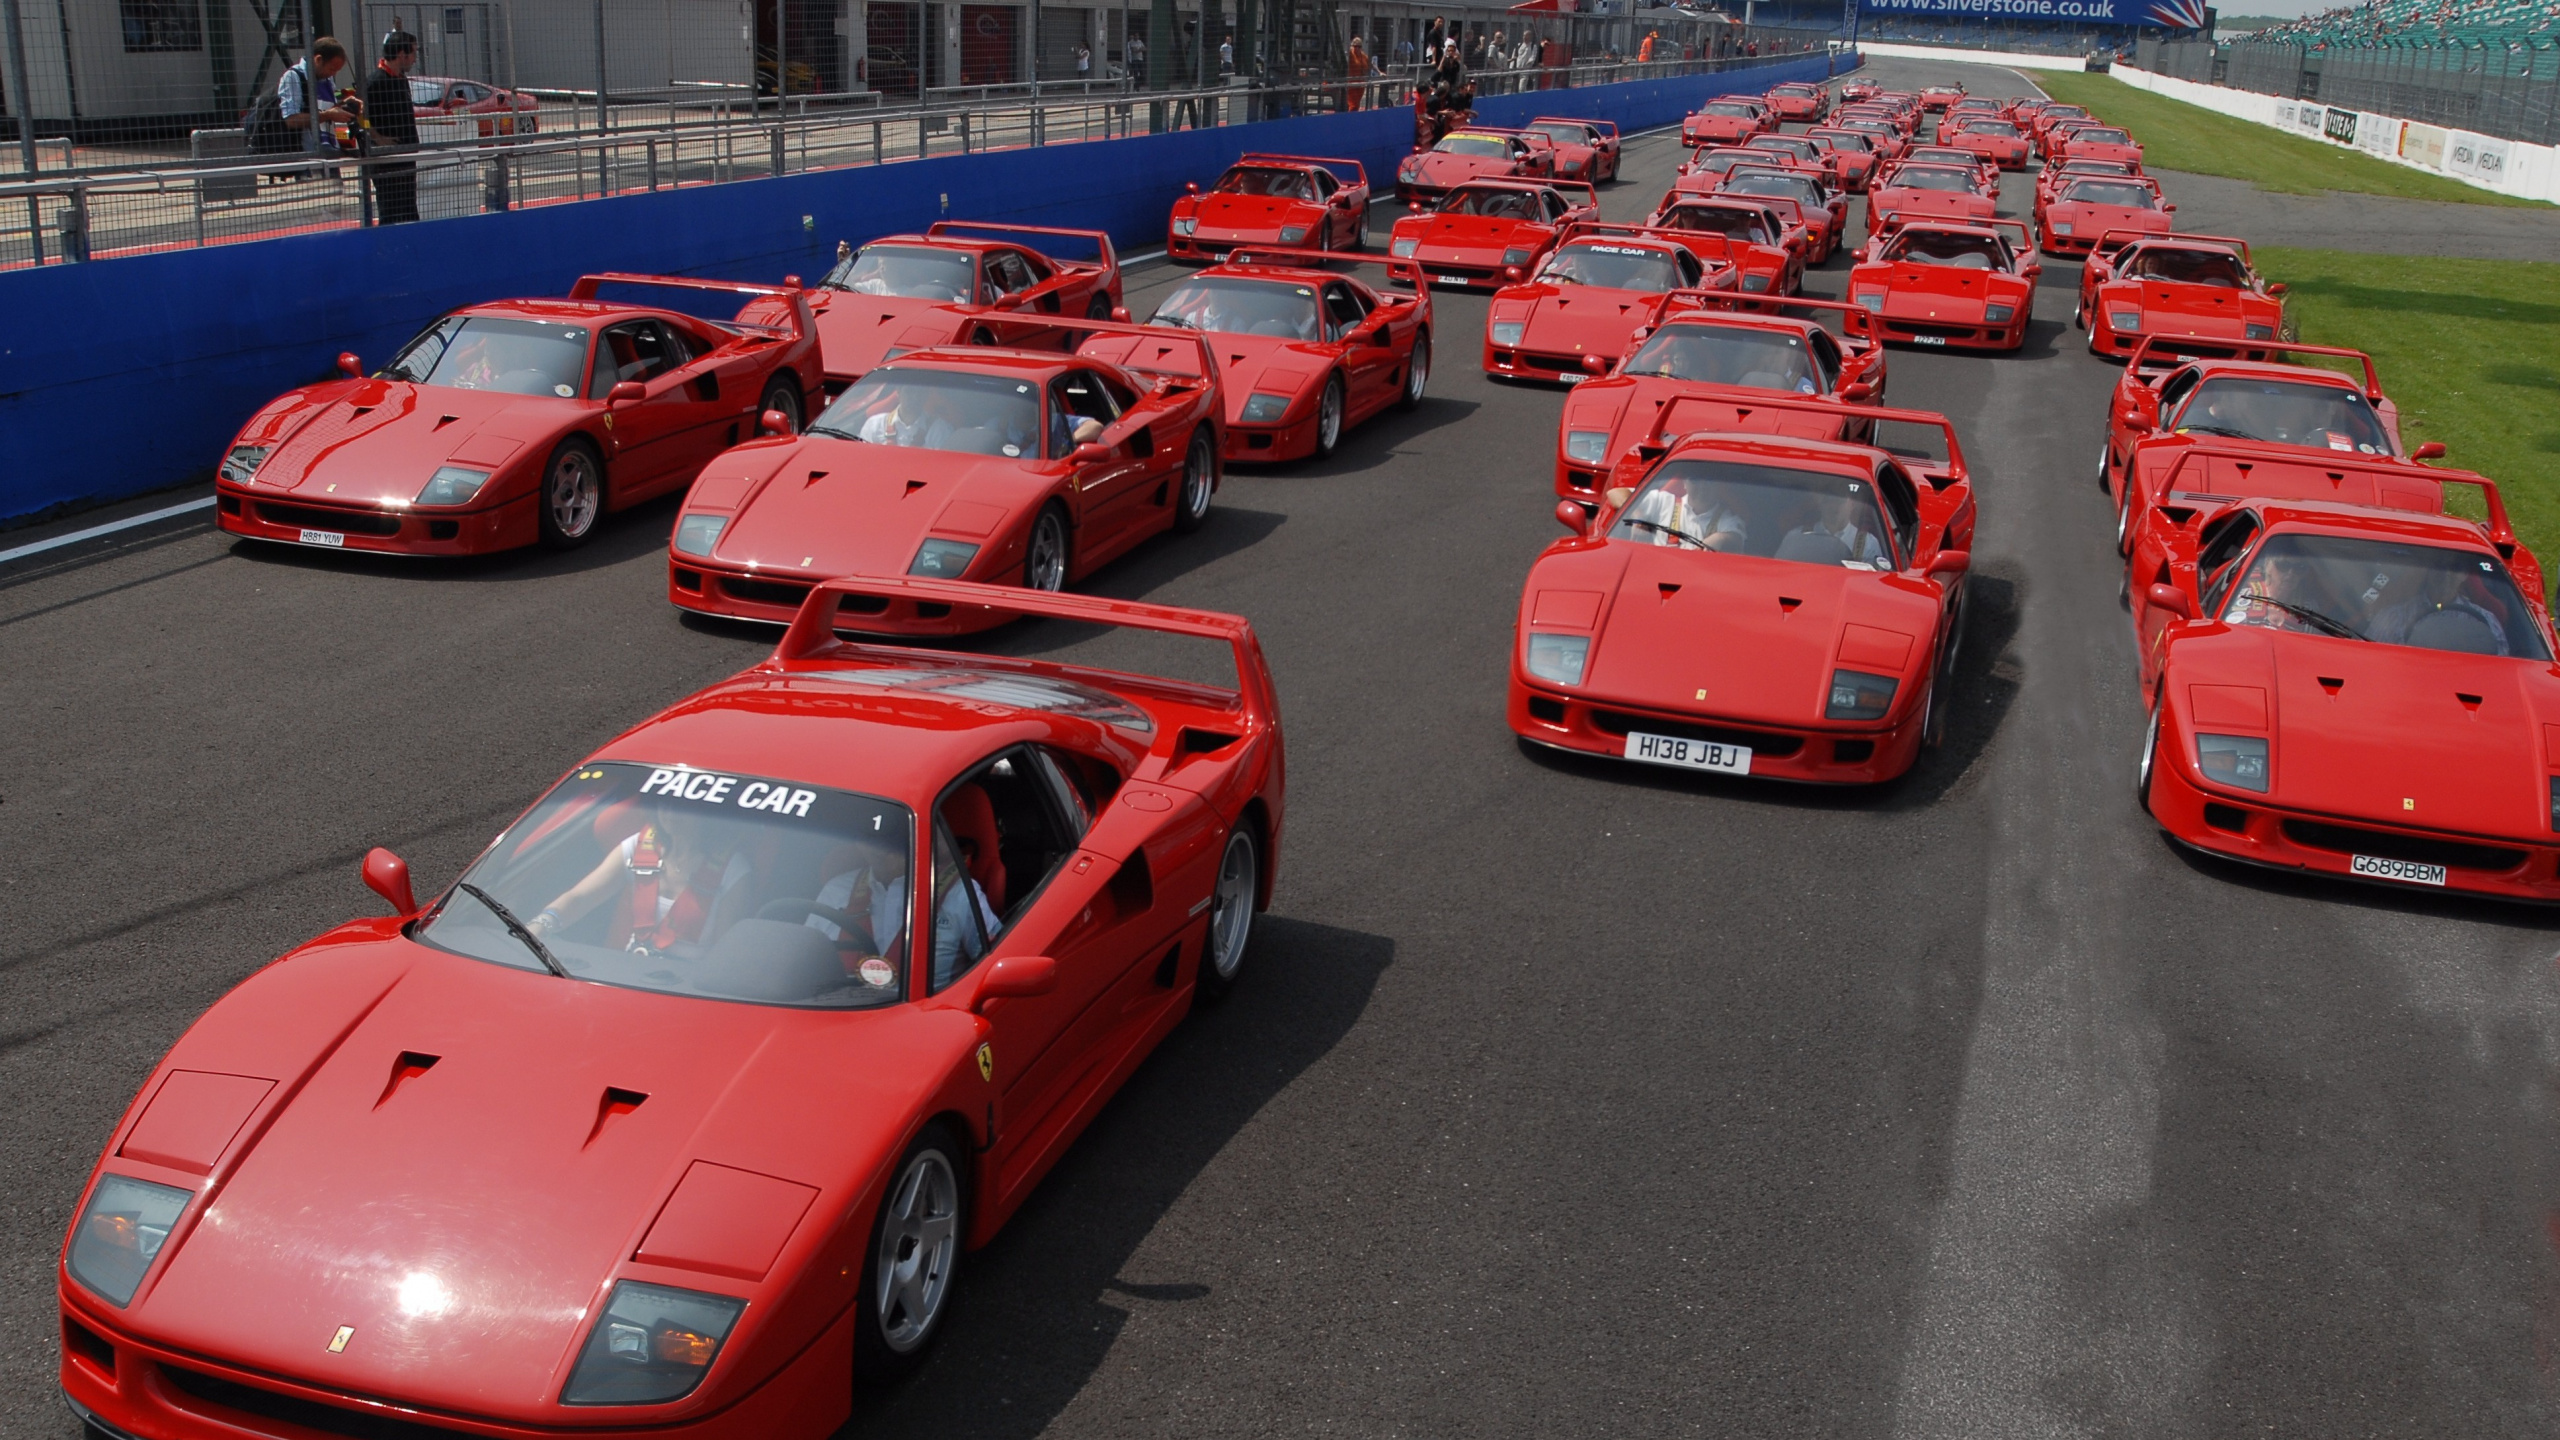 Voiture de Sport Ferrari Rouge Garée Sur un Parking Pendant la Journée. Wallpaper in 2560x1440 Resolution